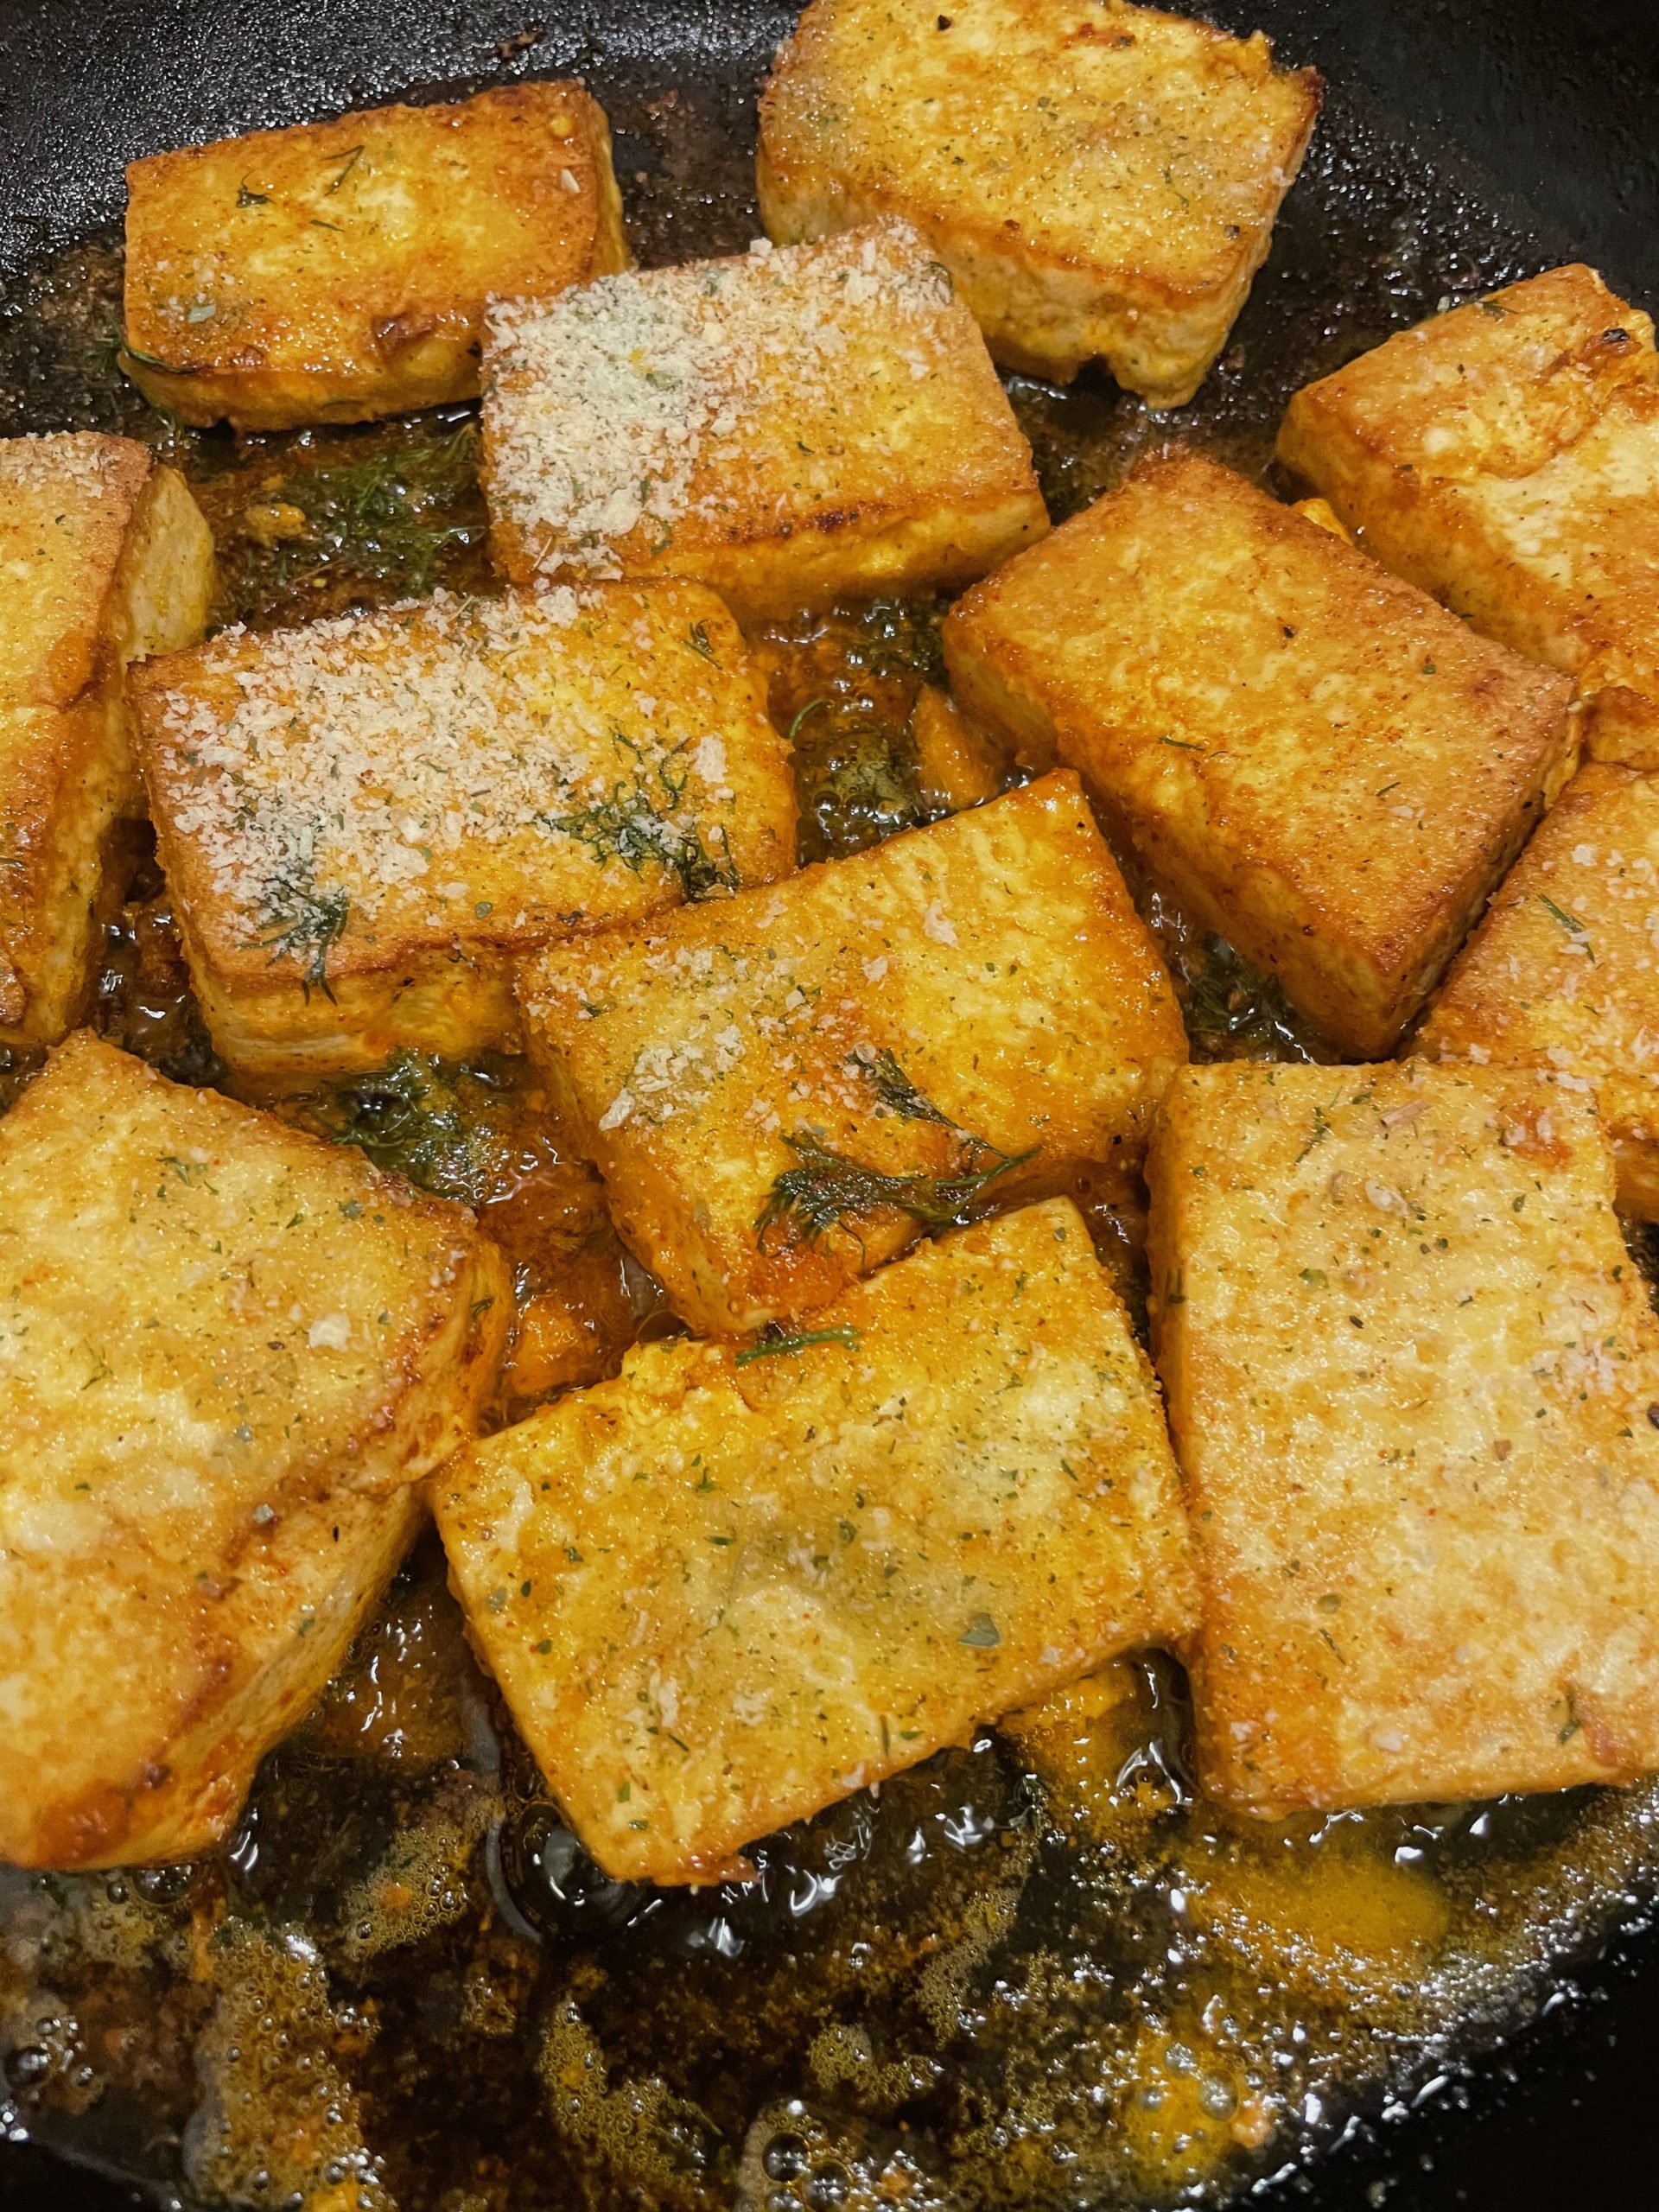 Tofu is frying!